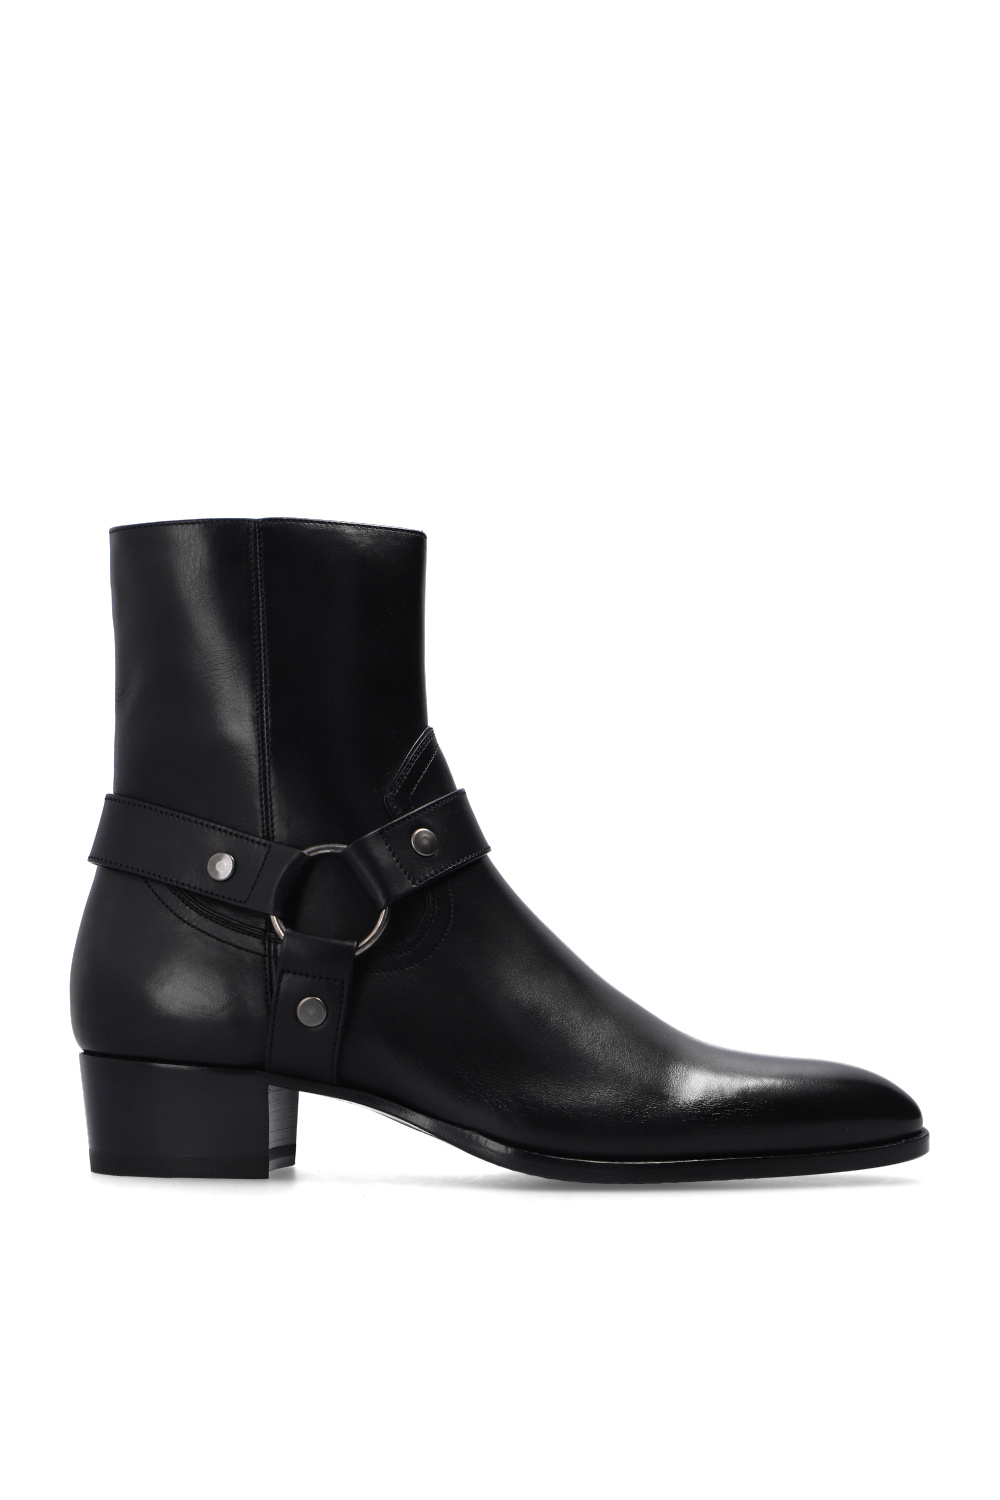 Black ‘Wyatt’ heeled ankle boots Saint Laurent - Vitkac GB